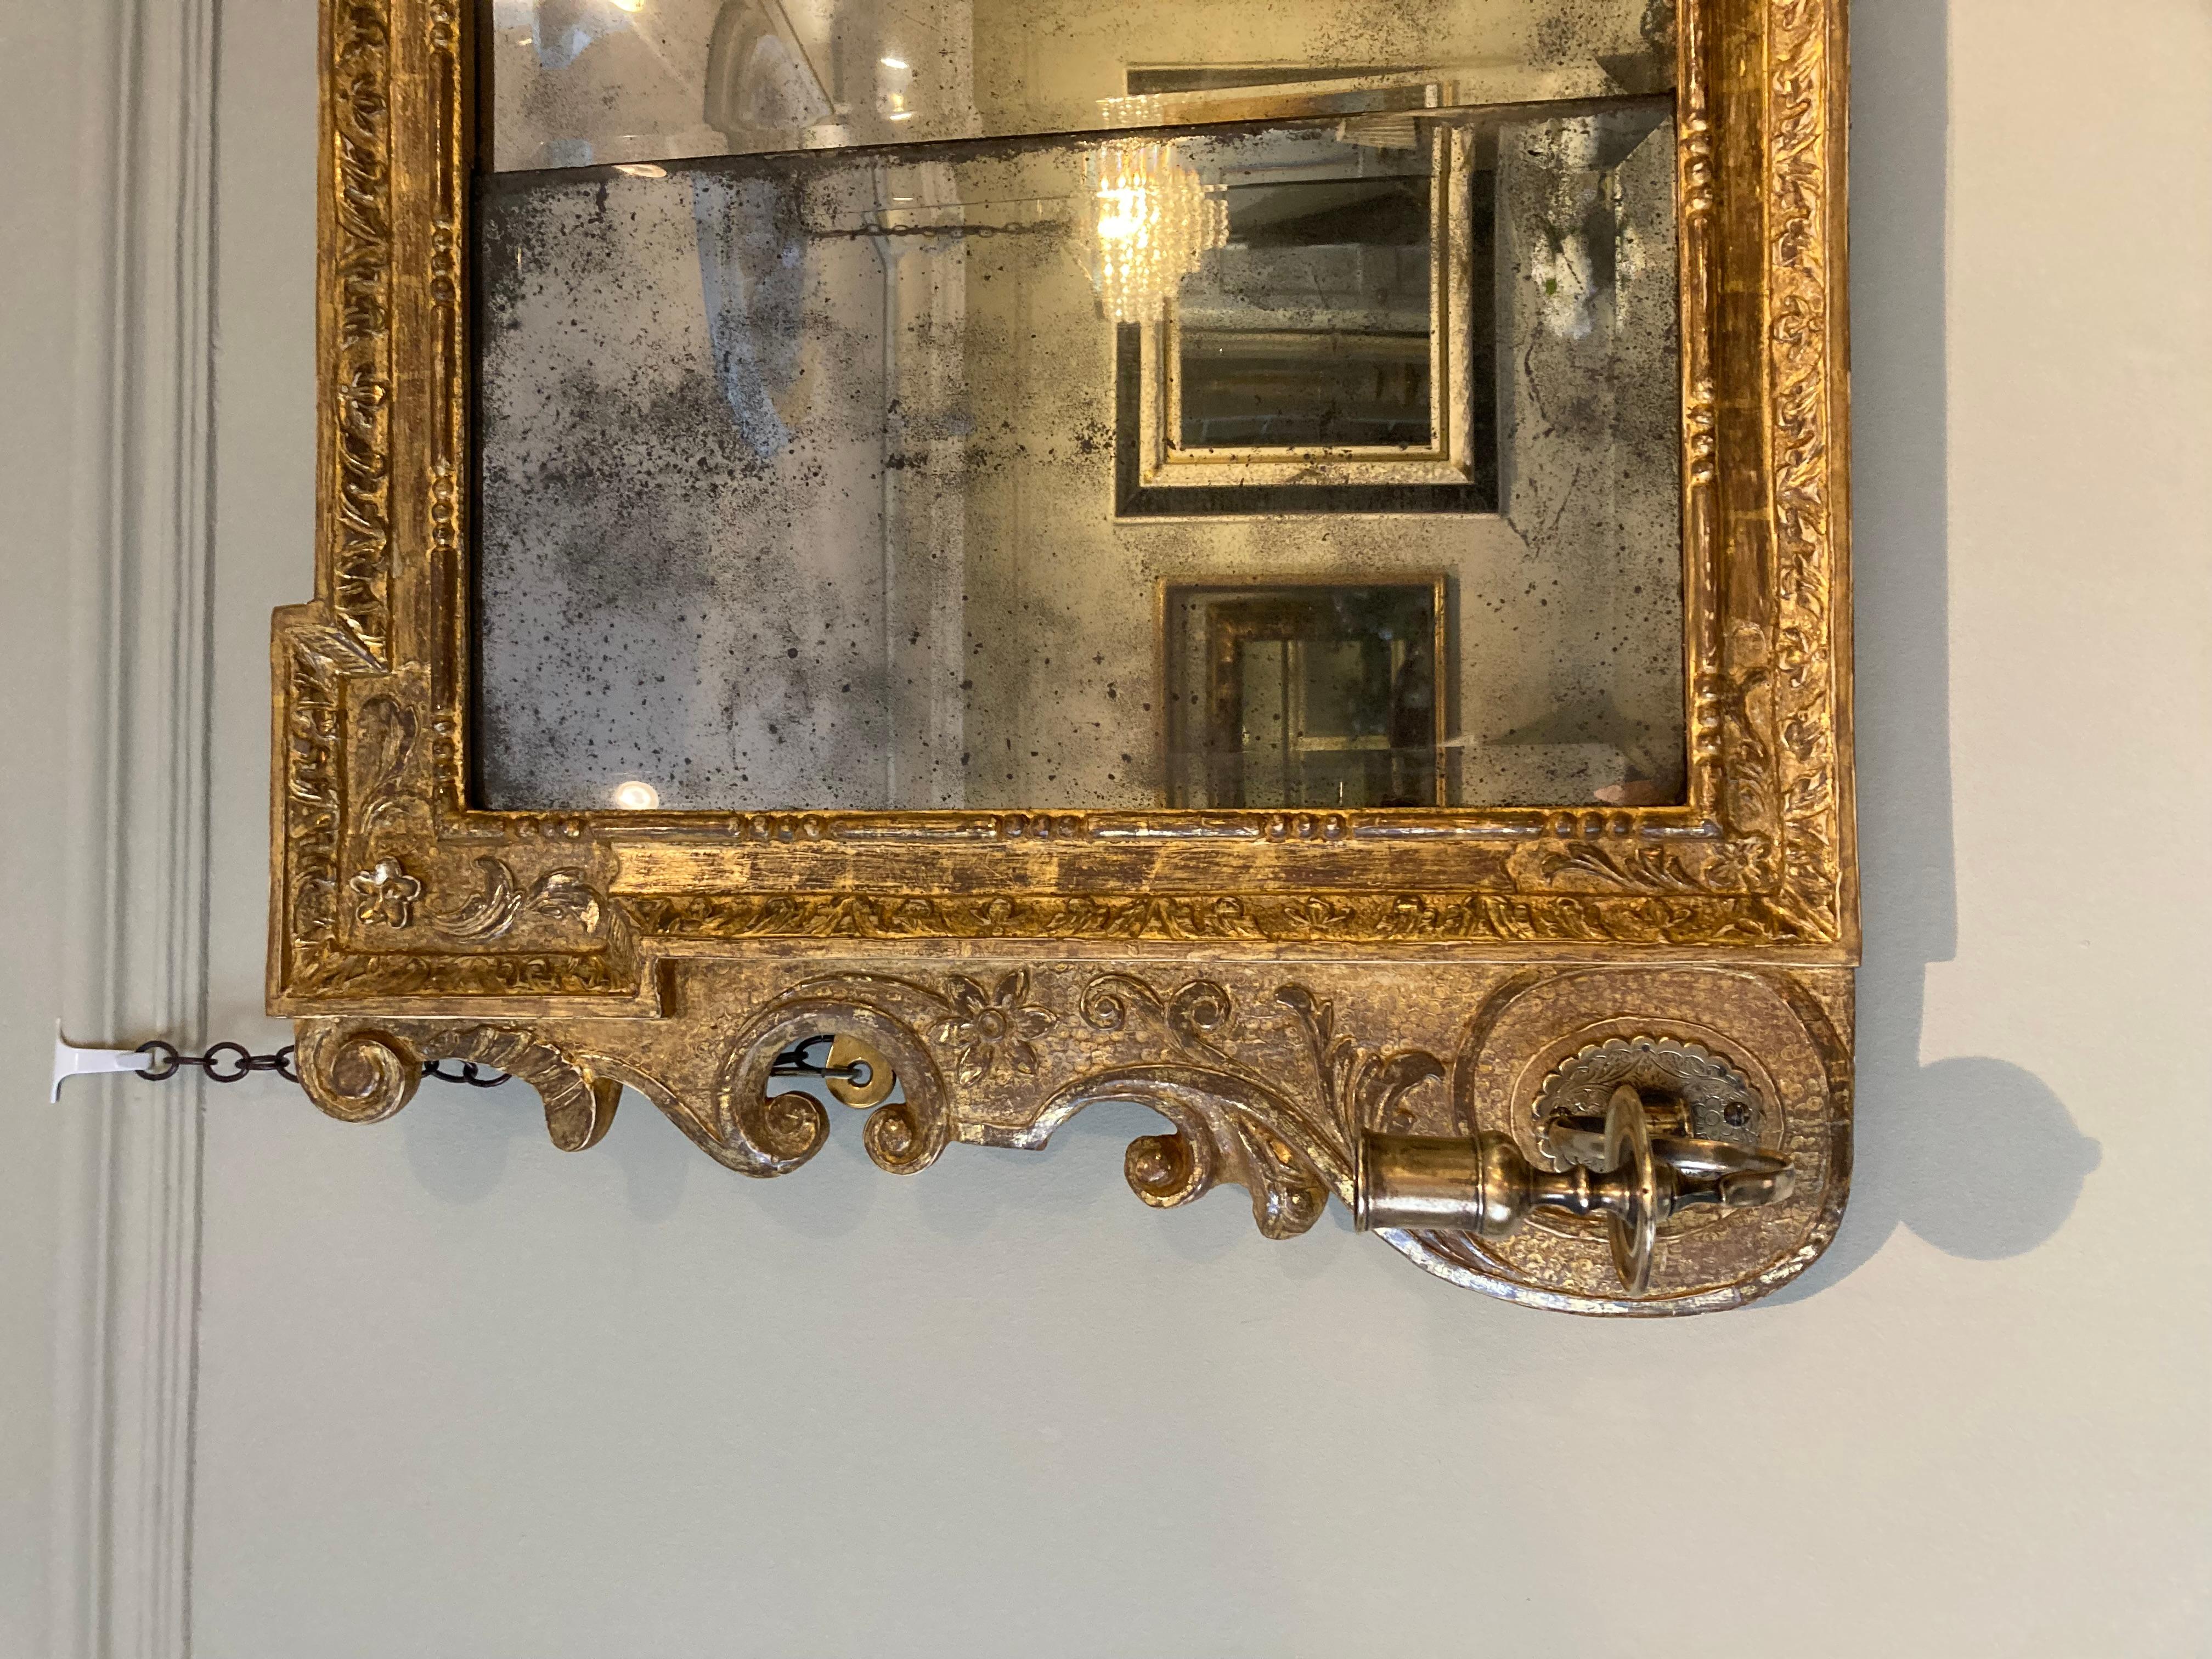 Eine feine frühe 18. Jahrhundert triple-Platte George II geschnitzt Goldholz gerahmt overmantle Spiegel der horizontalen Form mit Akanthusblatt, floralen und foliate Grenzen und gerollten Seiten Gehäuse zwei girandole Kerzenarme. Der Spiegel behält